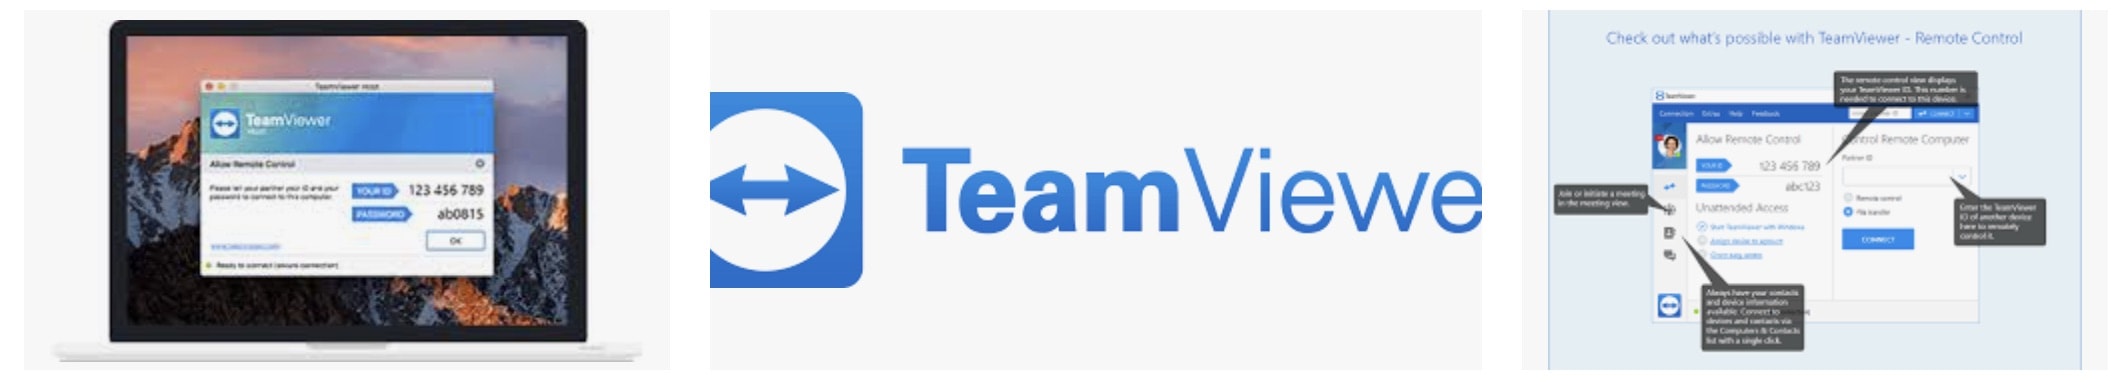 teamviewer.nl download